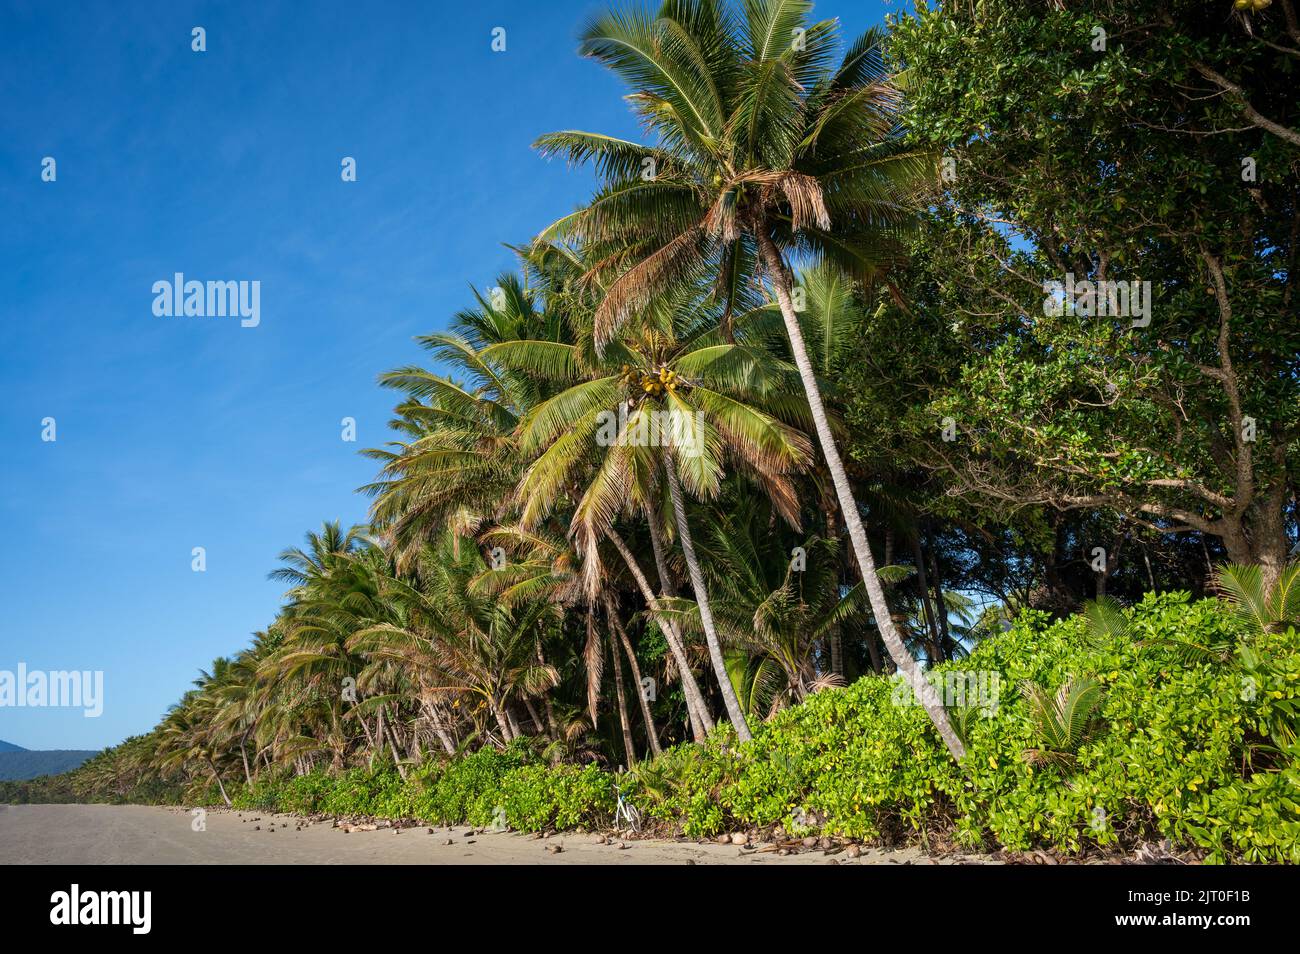 Ce complexe de 4 kilomètres de plage bordé de noix de coco est situé à Port Douglas, en bordure du Sheraton Mirage Resort, dans le Queensland, en Australie. Banque D'Images